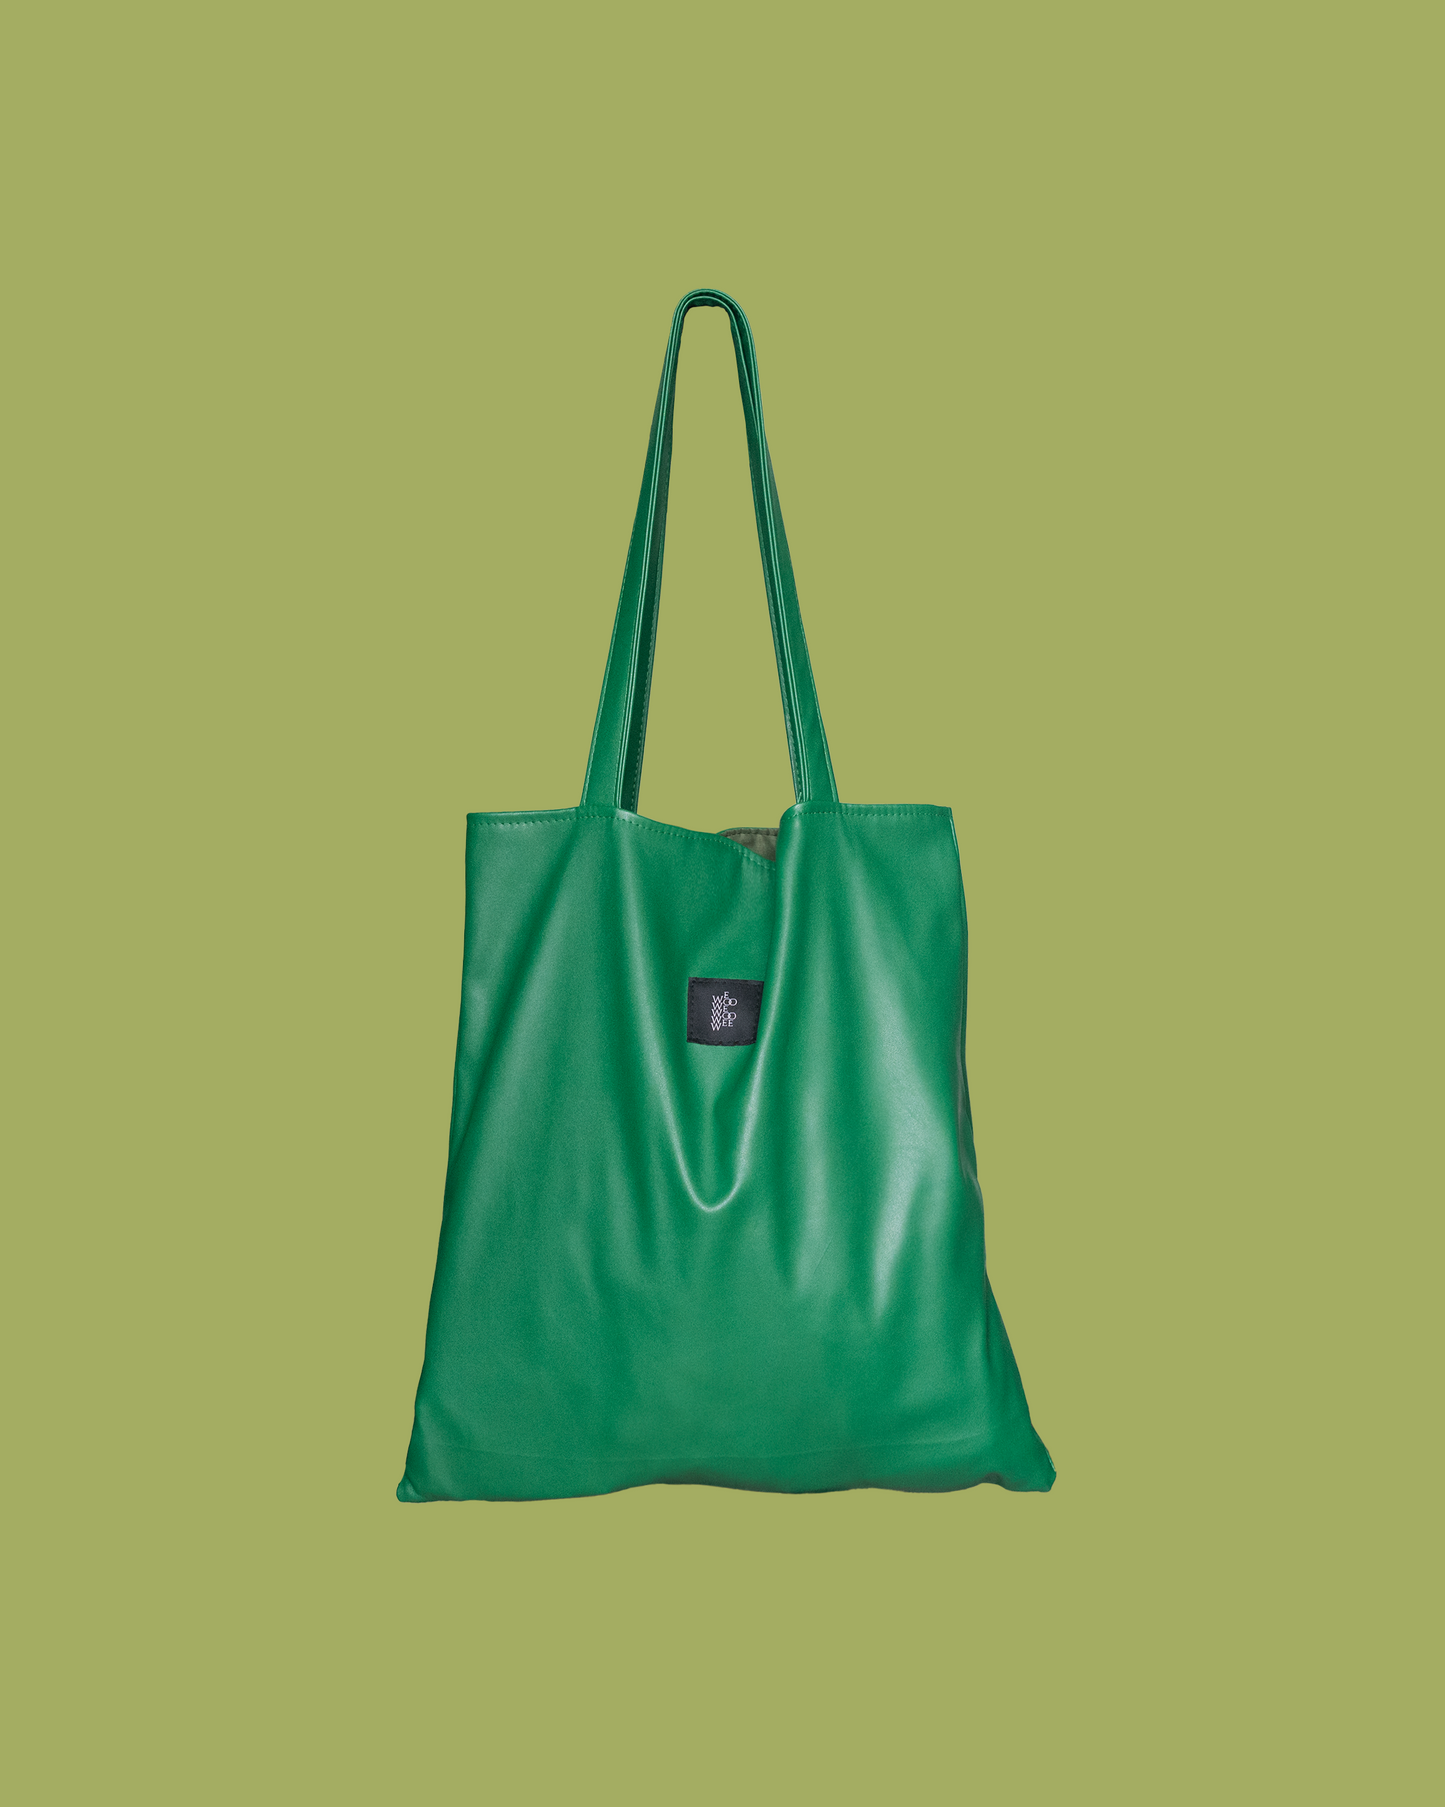 Square Tote - PU leather Bright Green